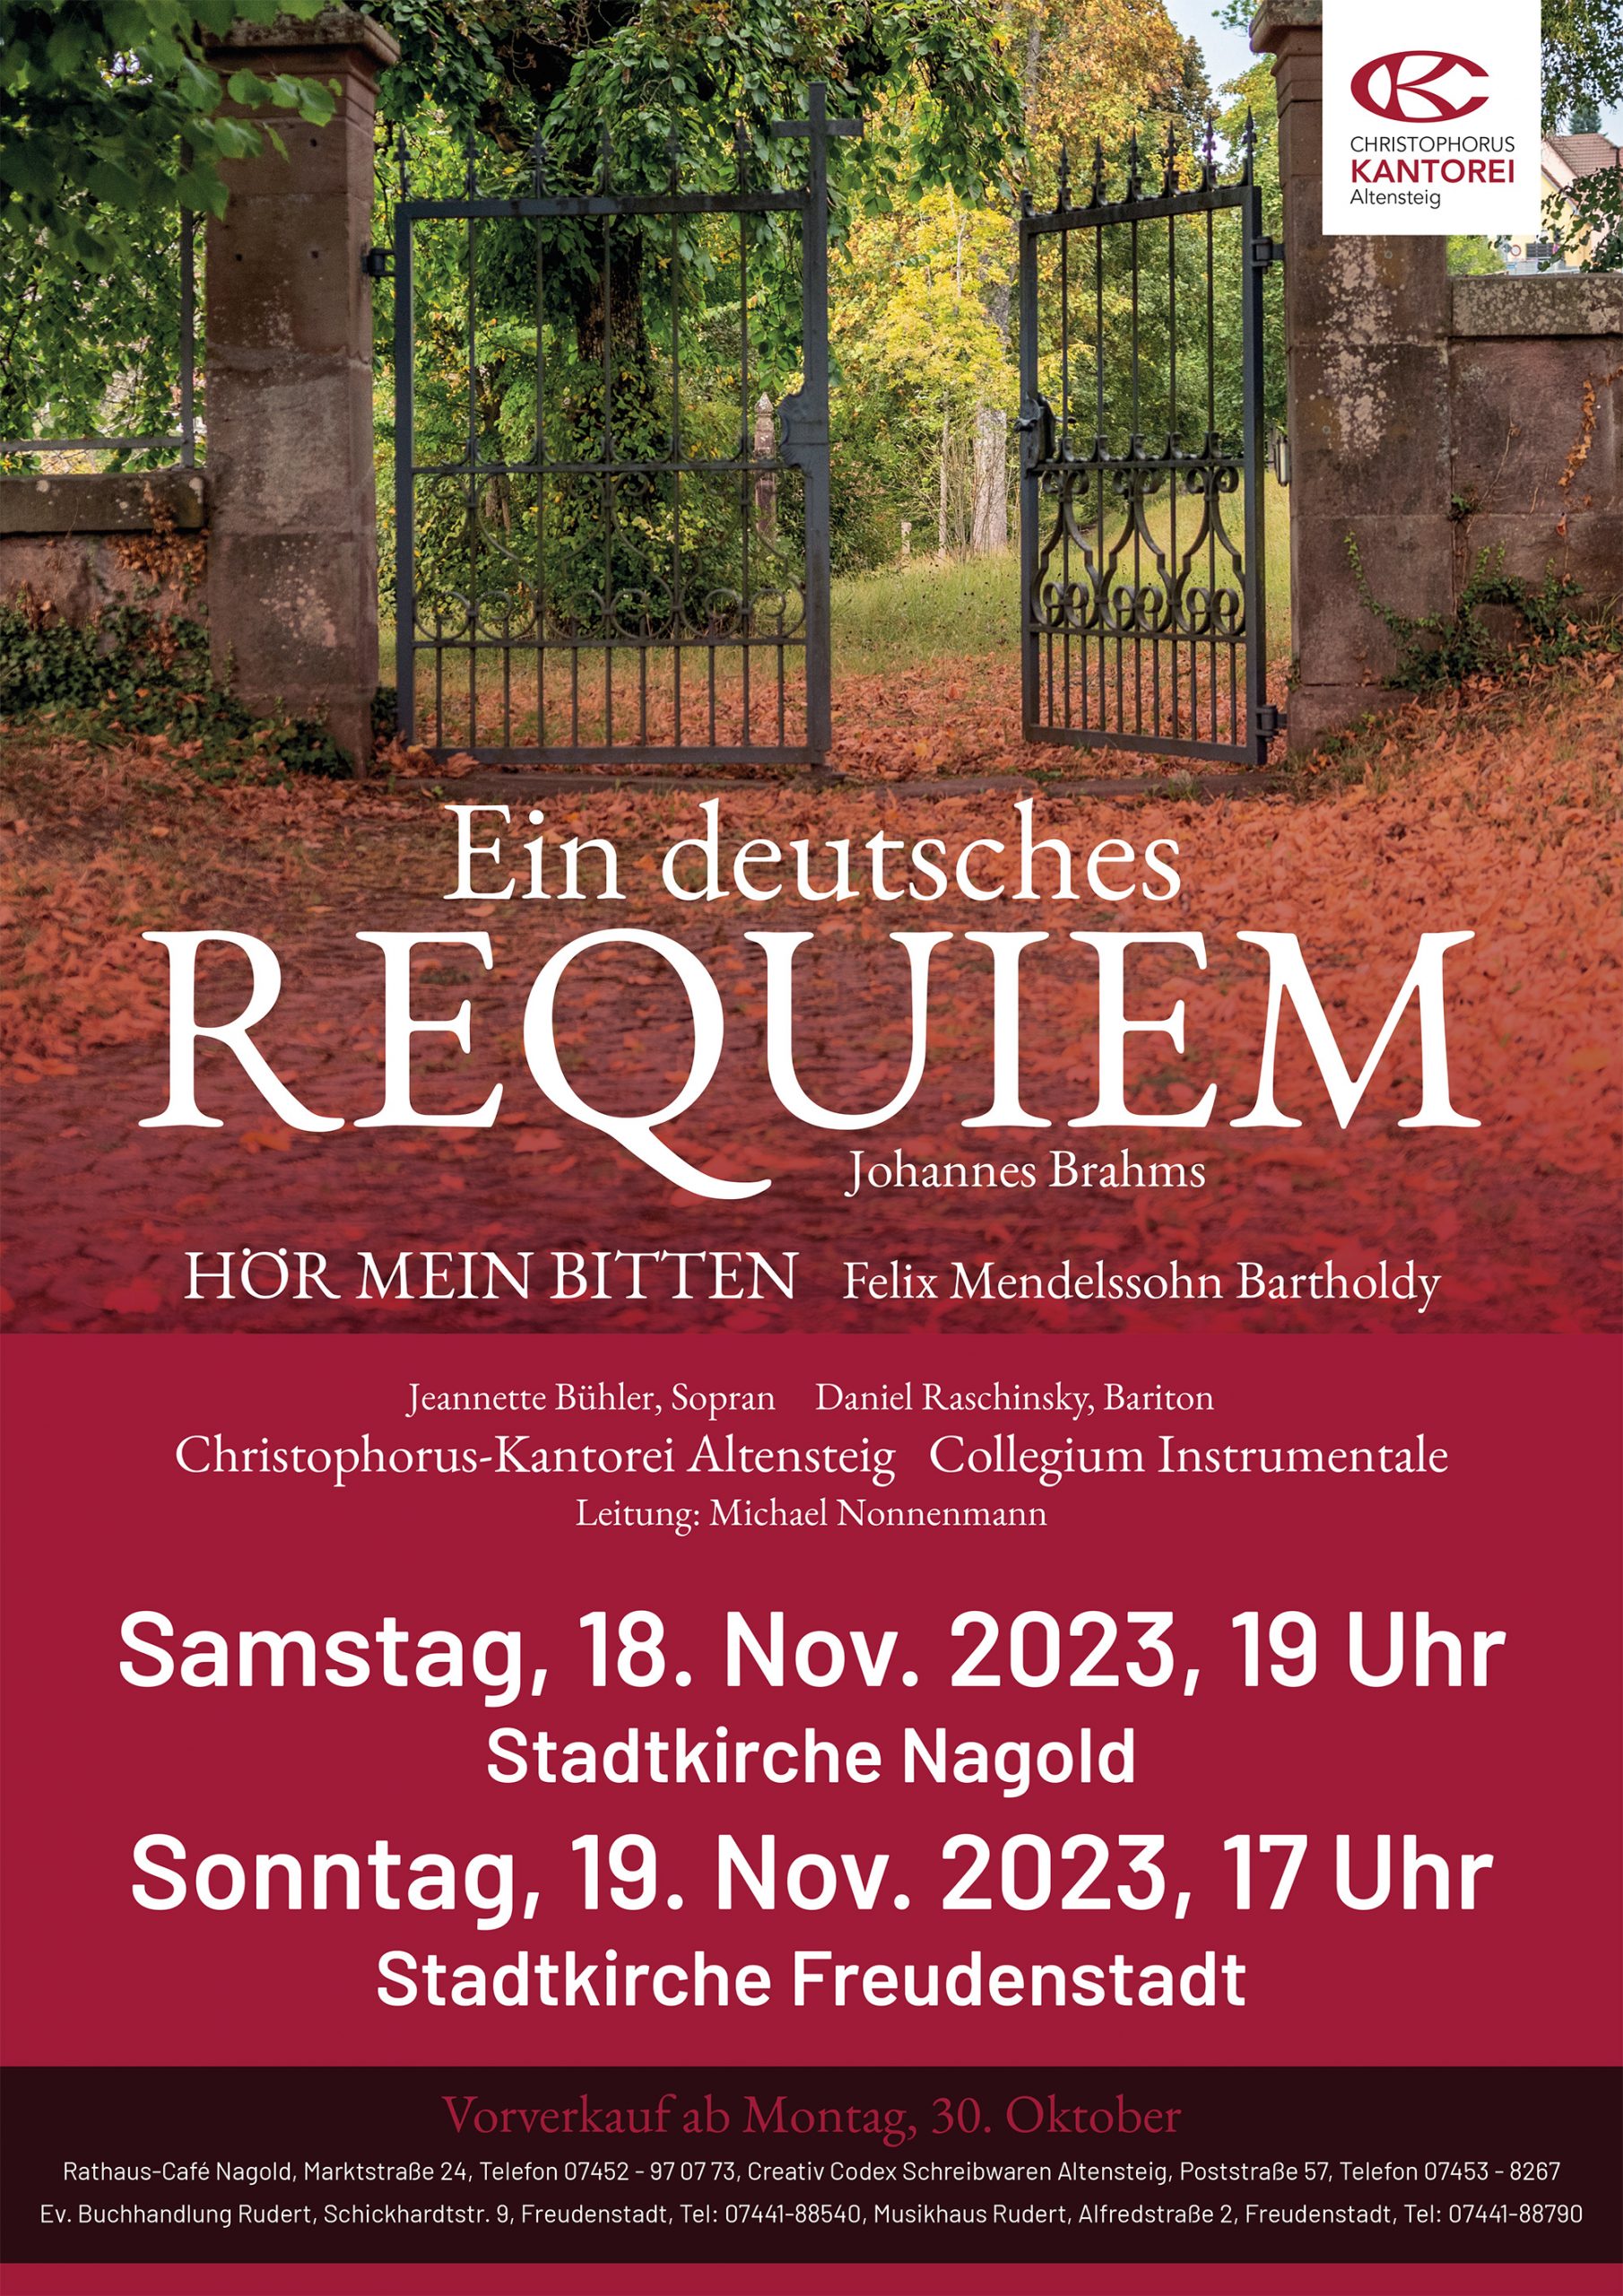 Ein deutsches Requiem – Johannes Brahms